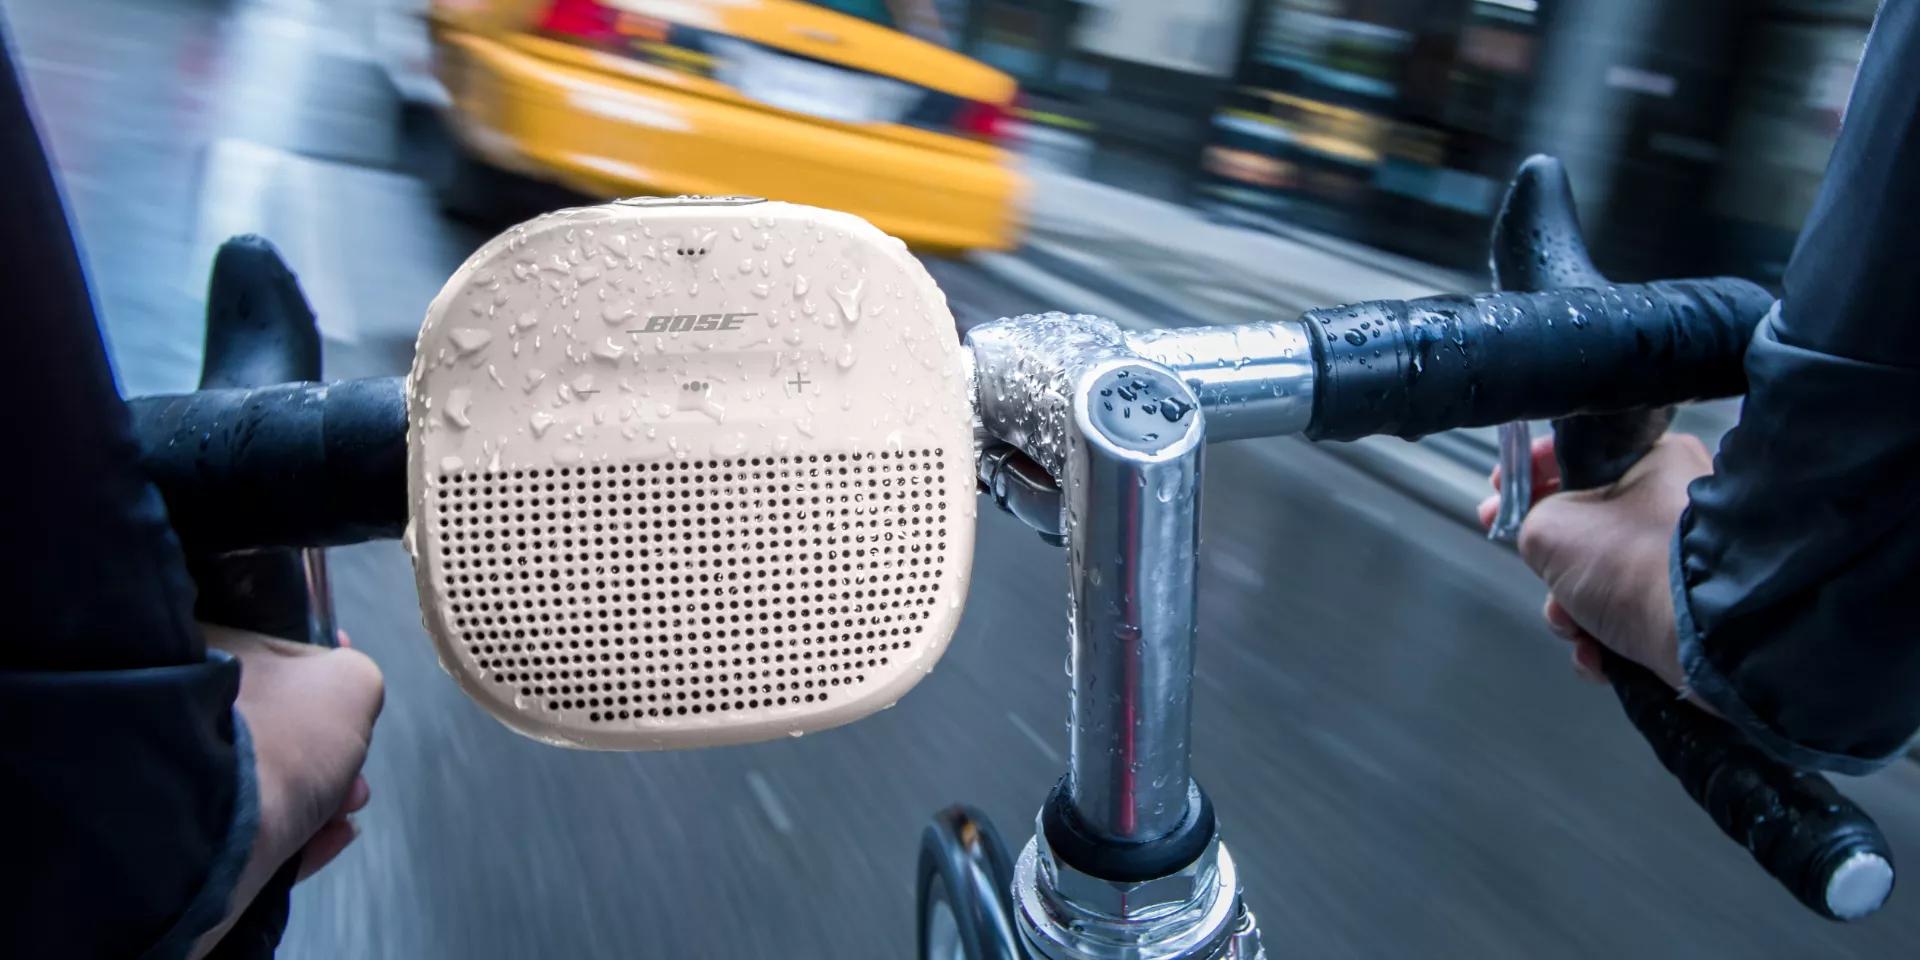 SoundLink Micro Waterproof Bluetooth Speaker | Bose